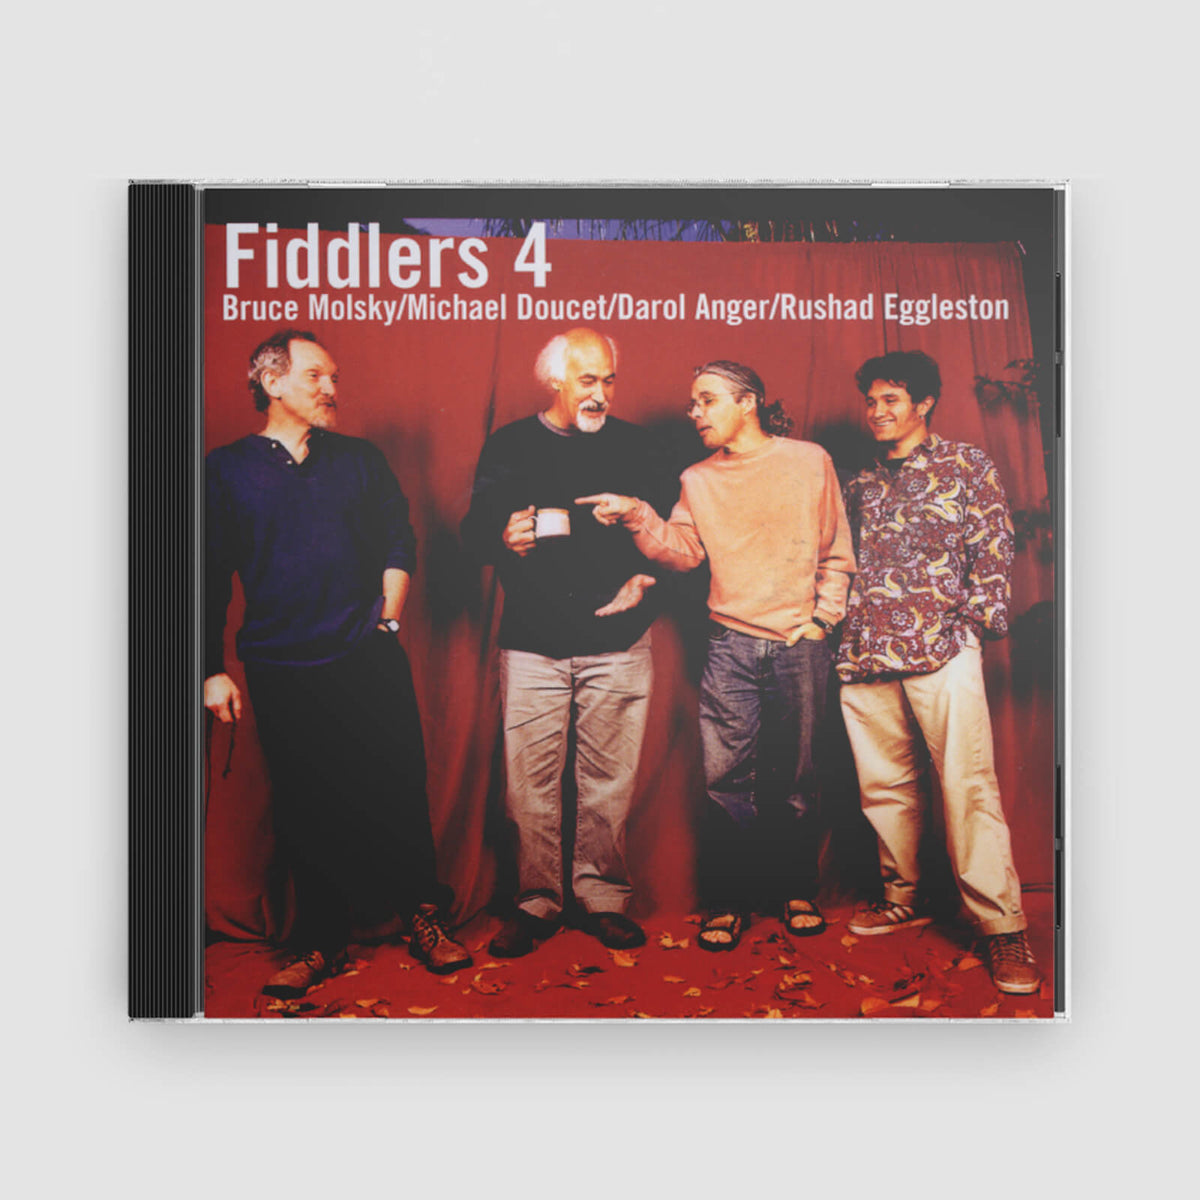 FIDDLERS 4 : FIDDLERS 4